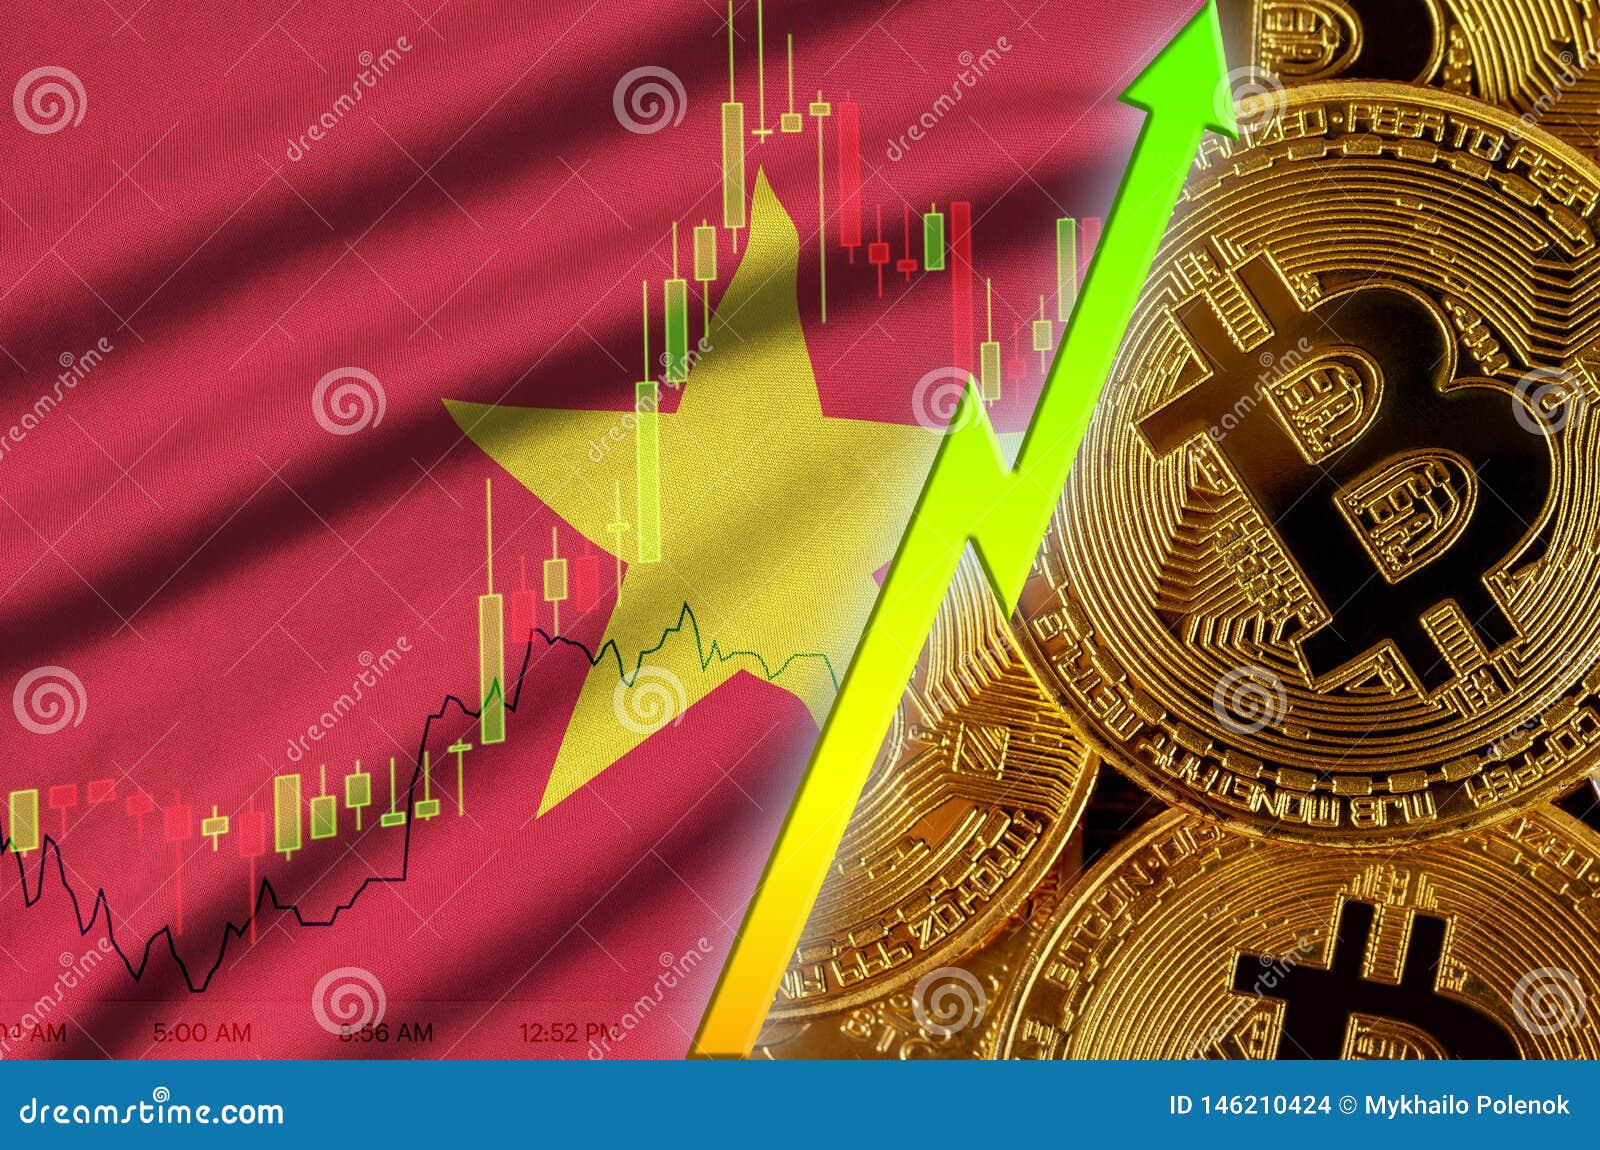 Vietnam bitcoin price bitcoin blog sites